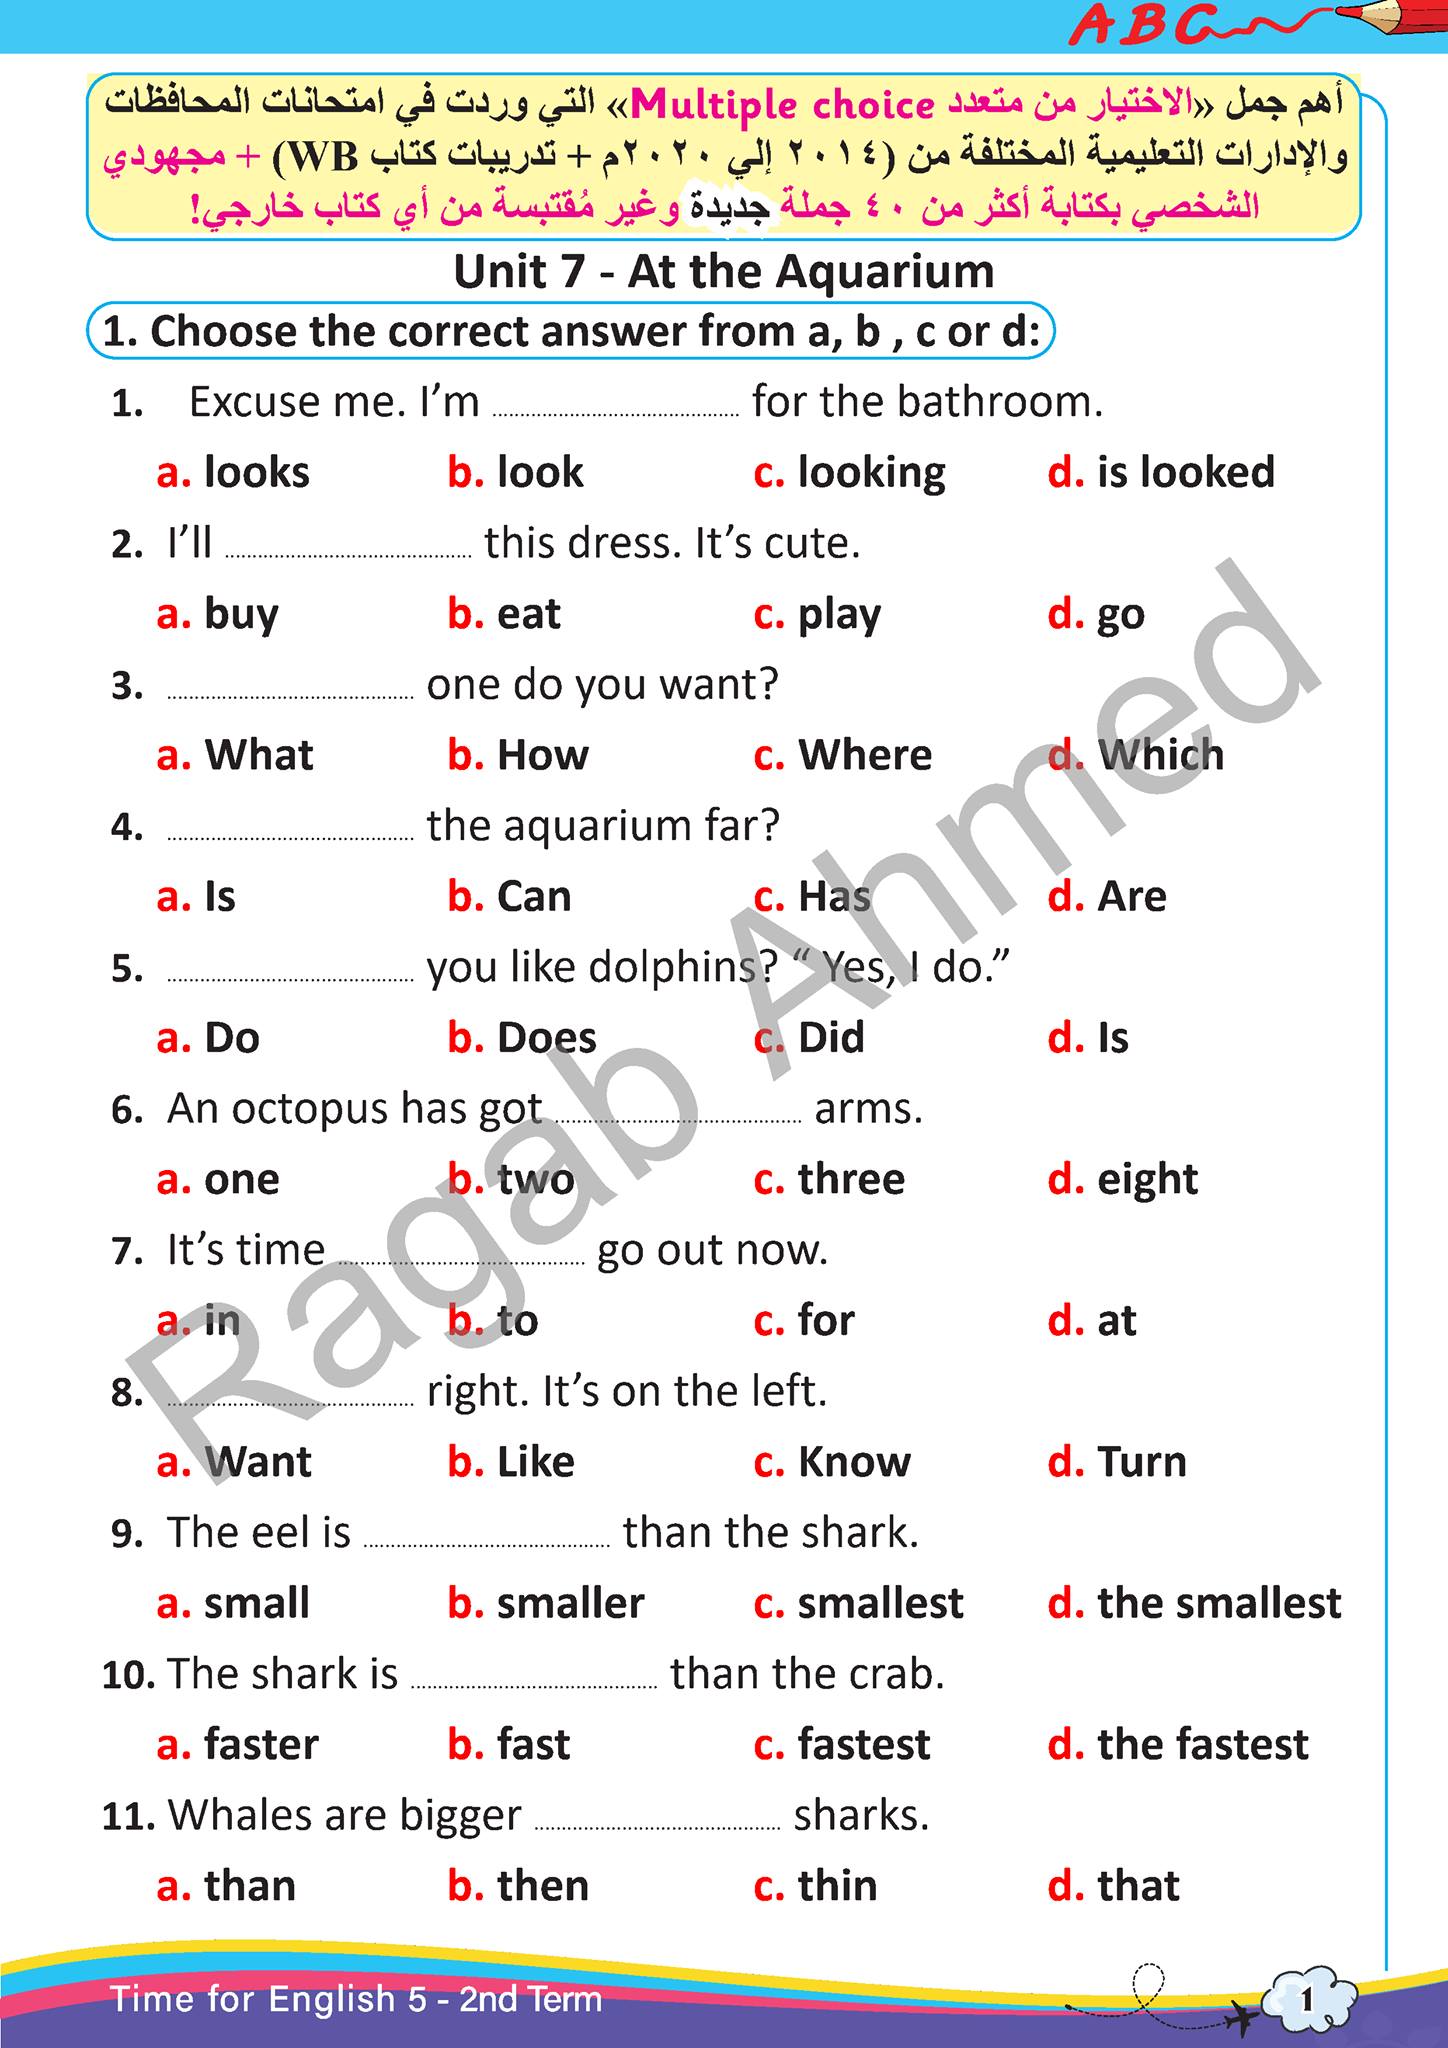  مراجعة اسئلة امتحان انجليزي خامسة ابتدائى ترم ثانى  1